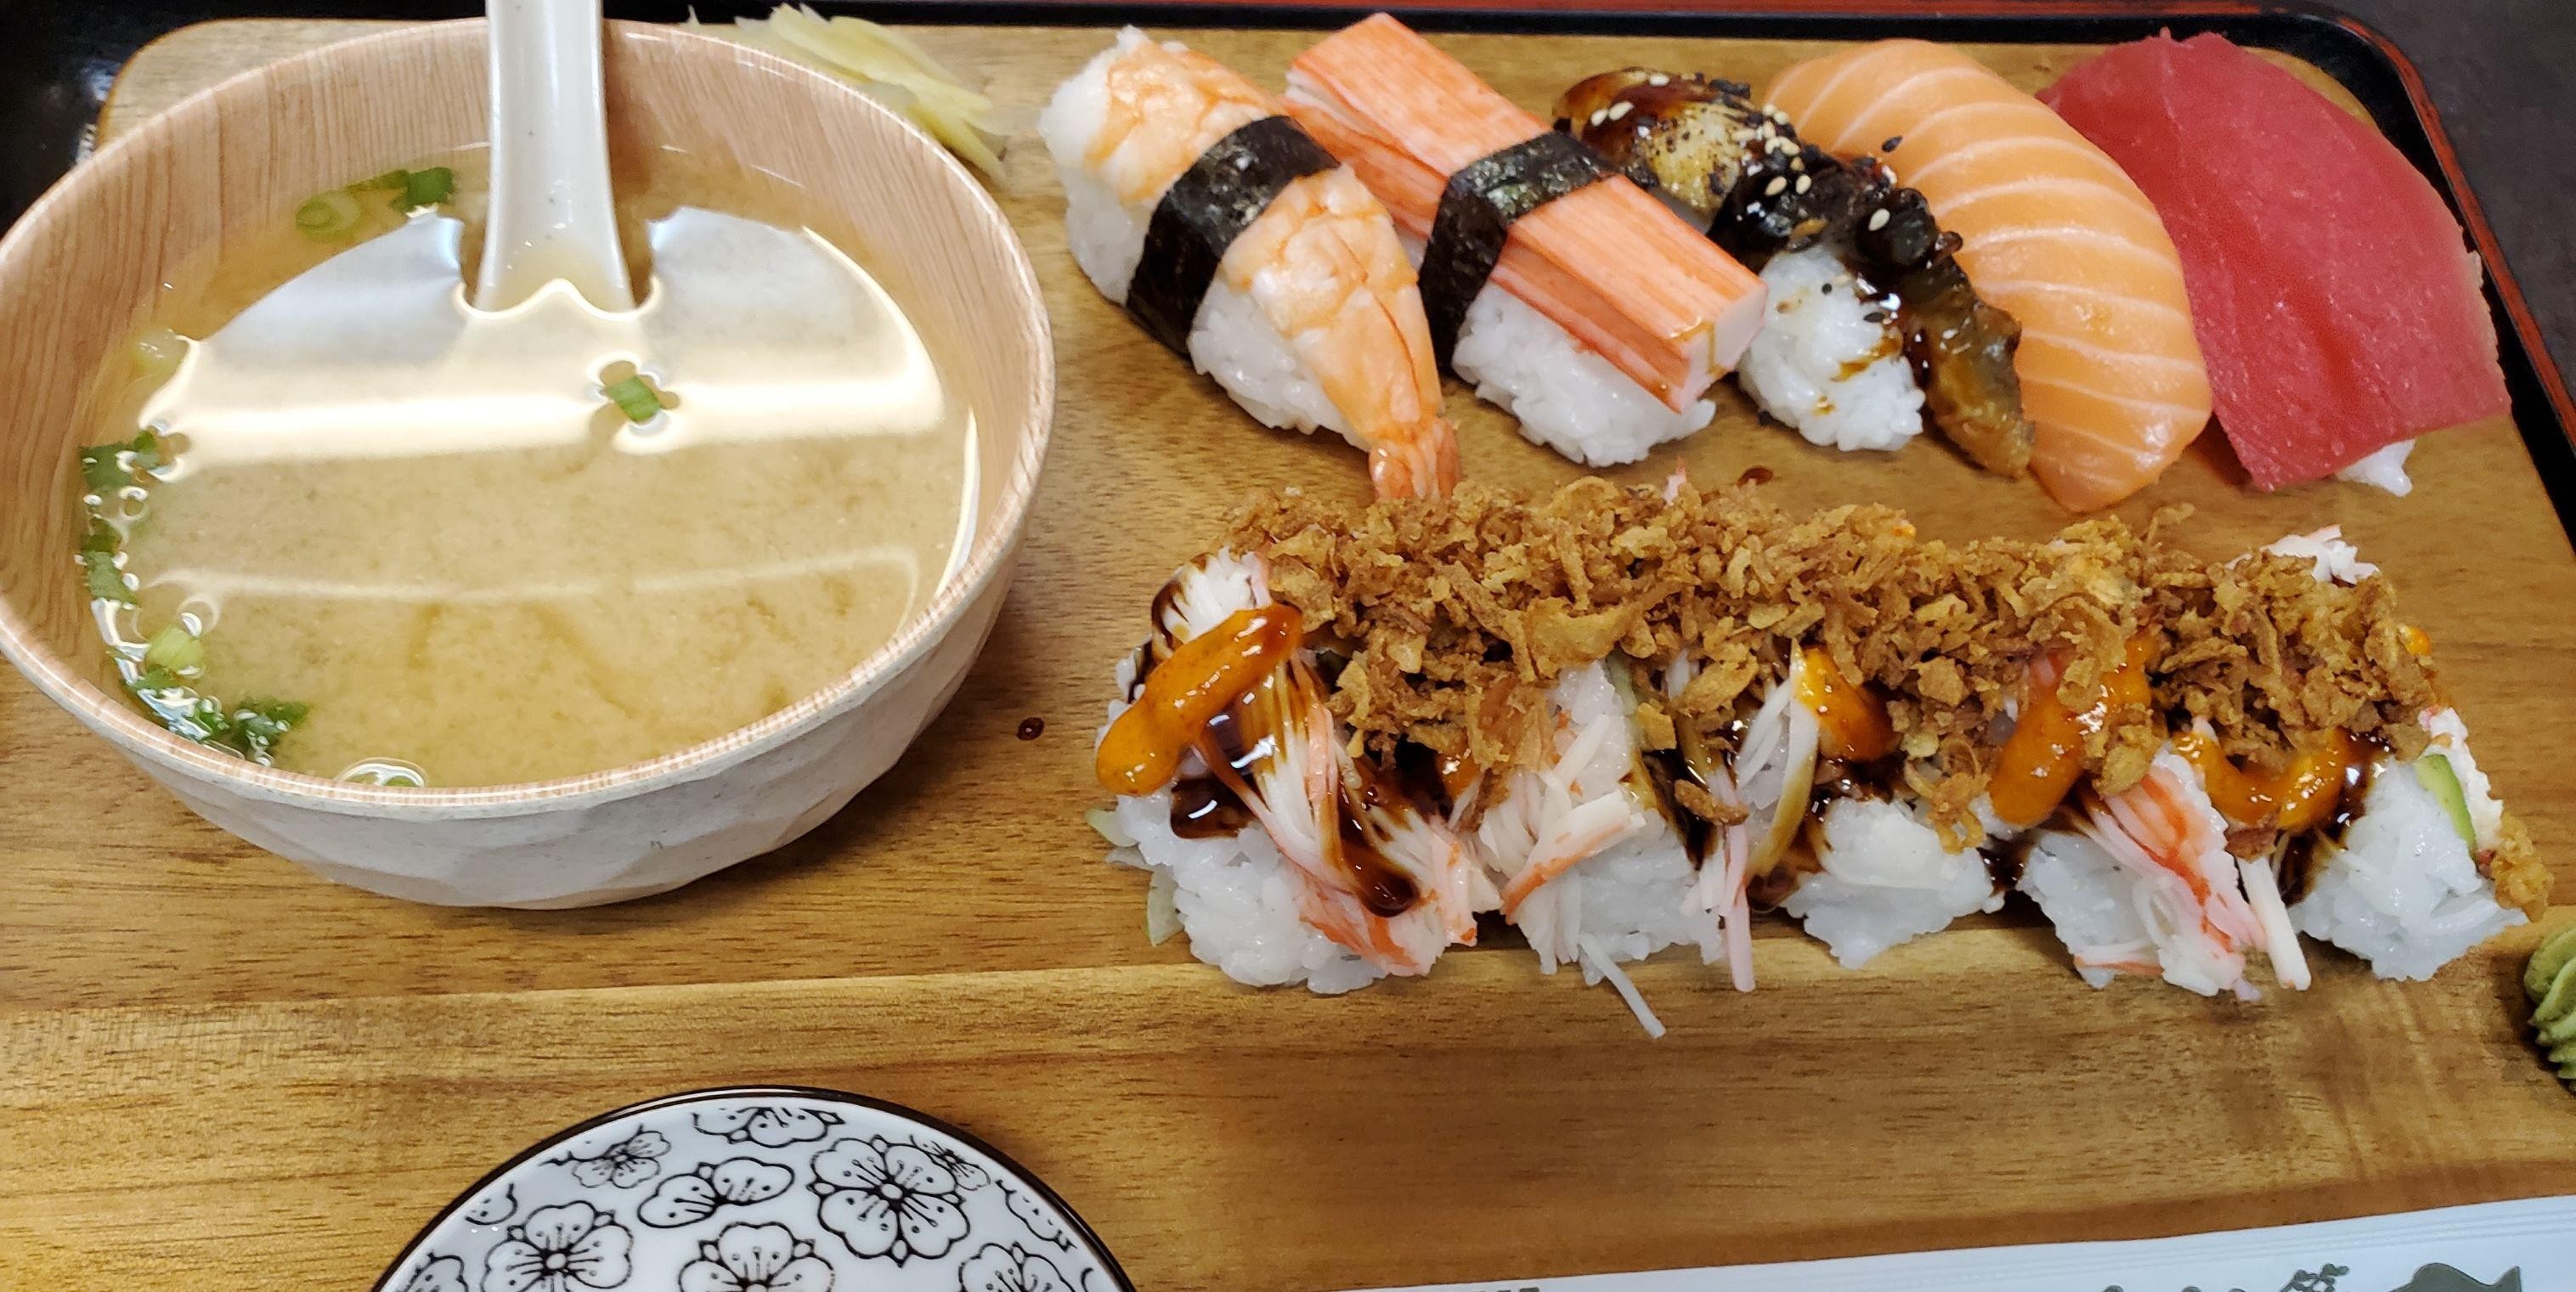 Mixed Sushi Nigiri(5pc)+Newyork Crunch Roll(5pc)